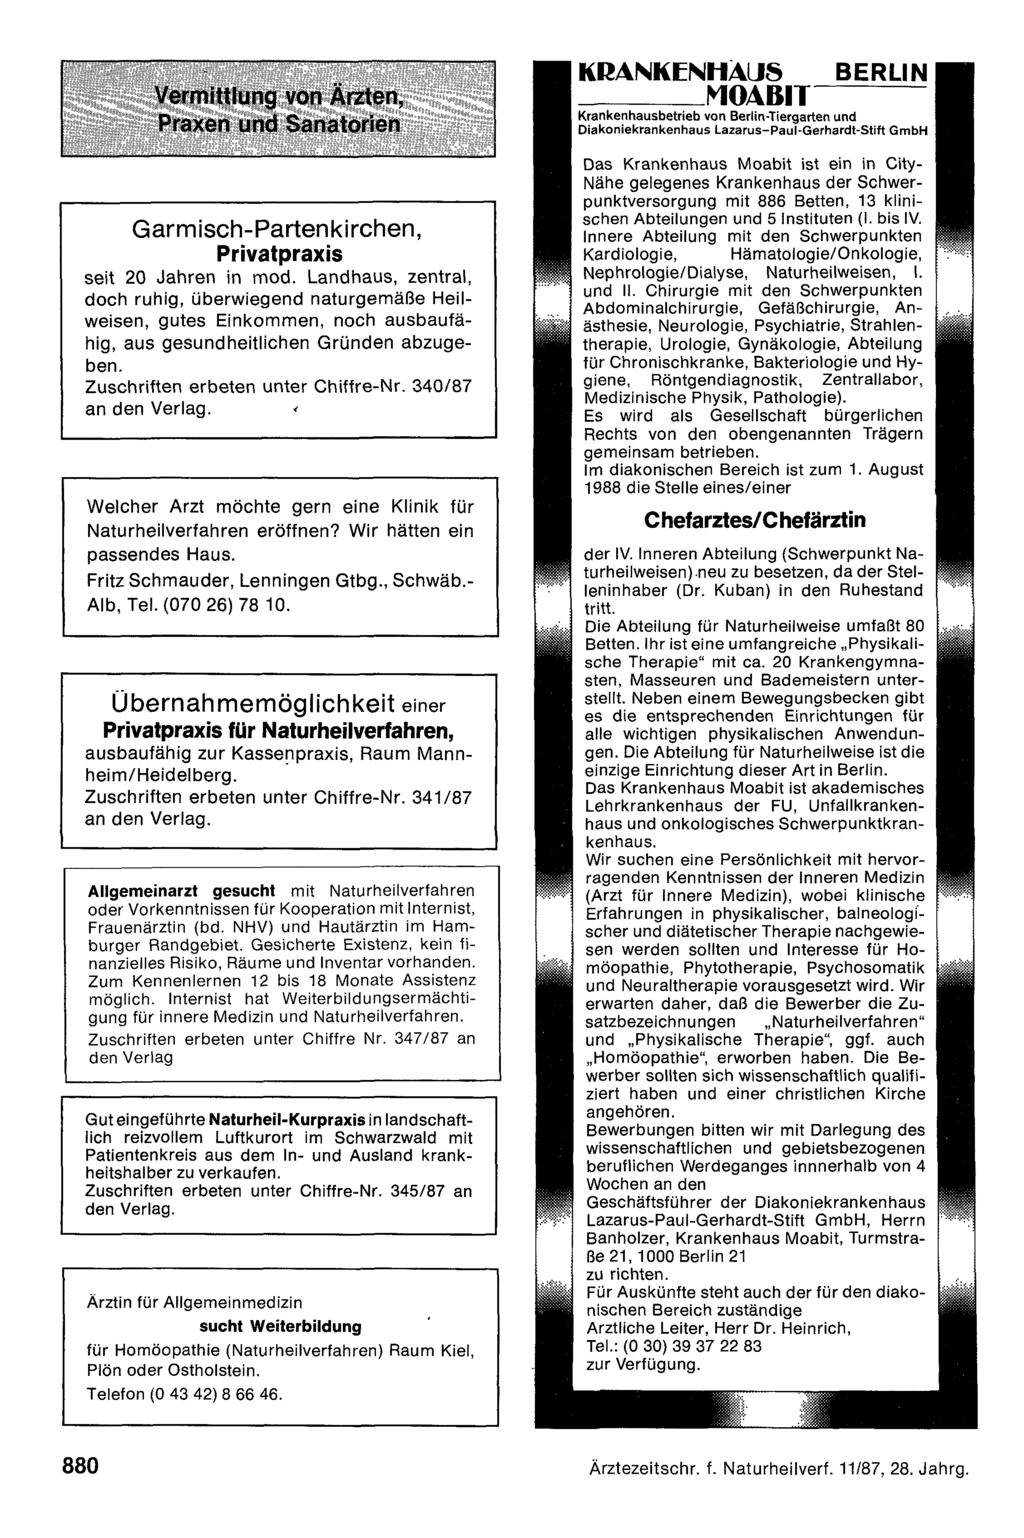 Vermittlung von Ärzten, Praxen und Sanatorien Garmisch-Partenkirchen, Privatpraxis seit 20 Jahren in mod.